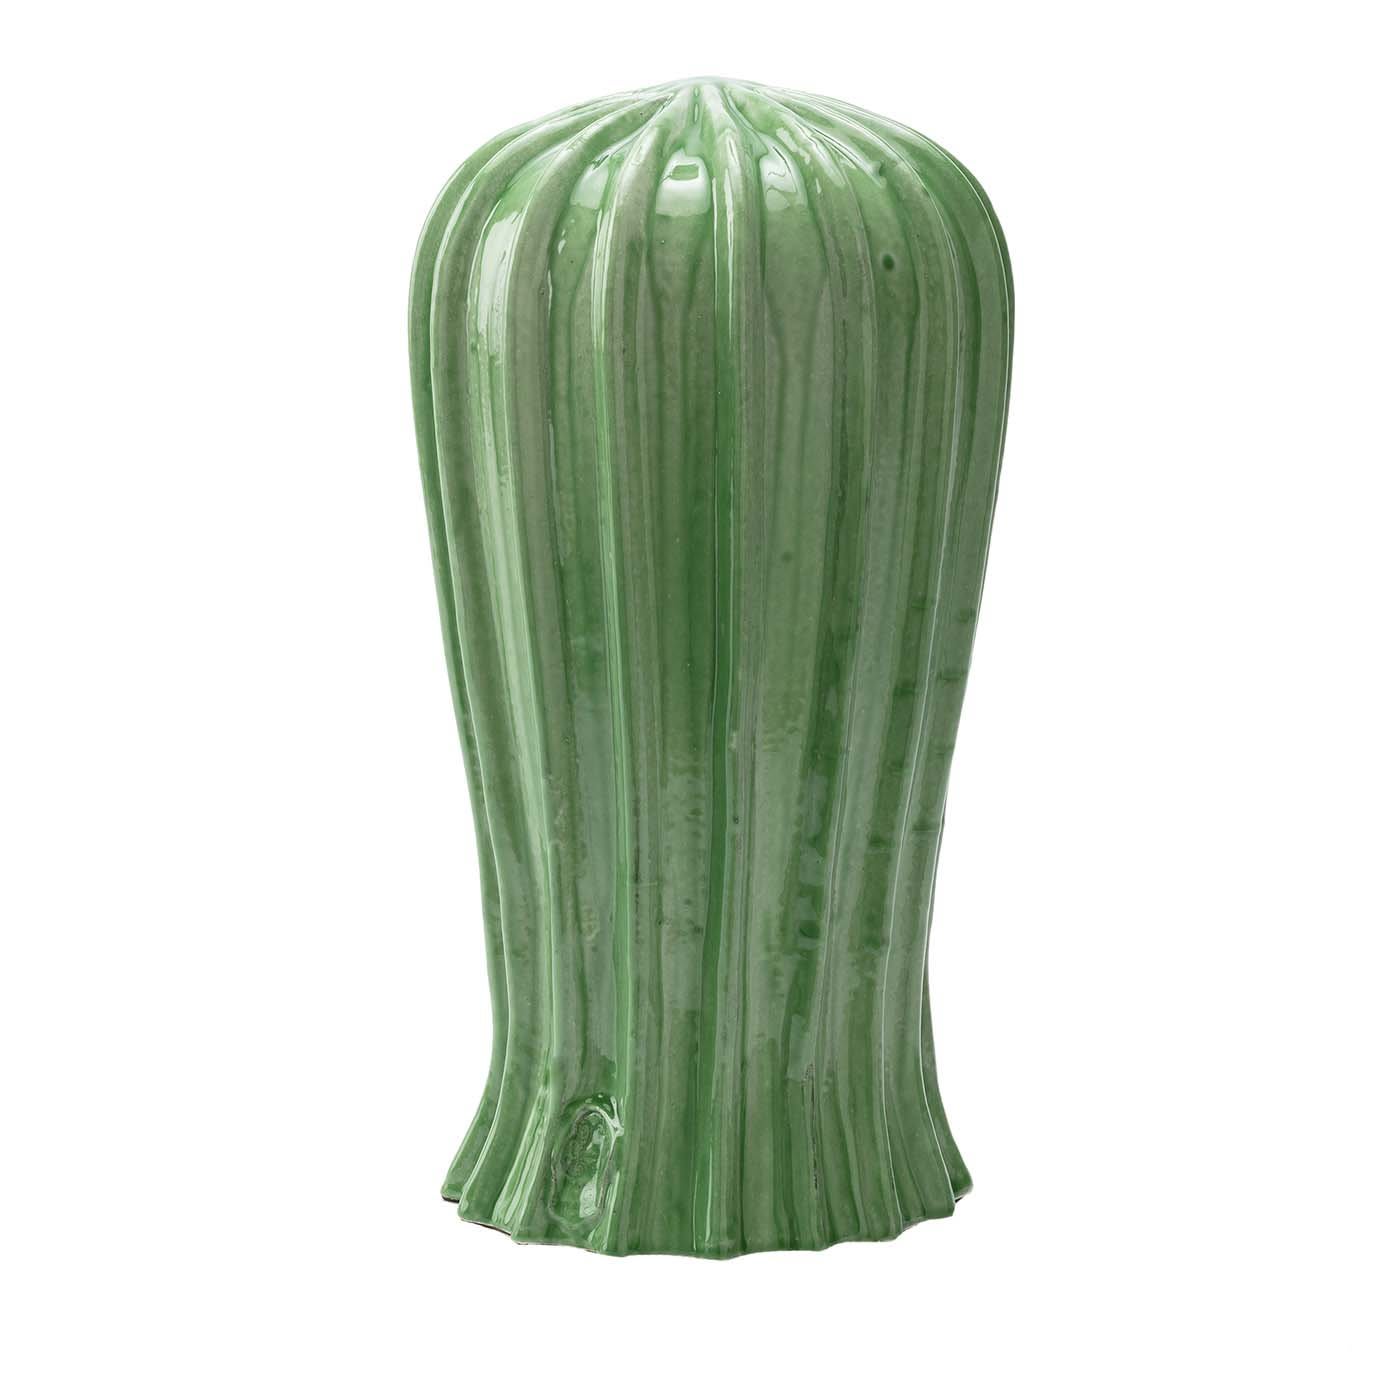 Cactus Tall Green Sculpture - Cerasarda